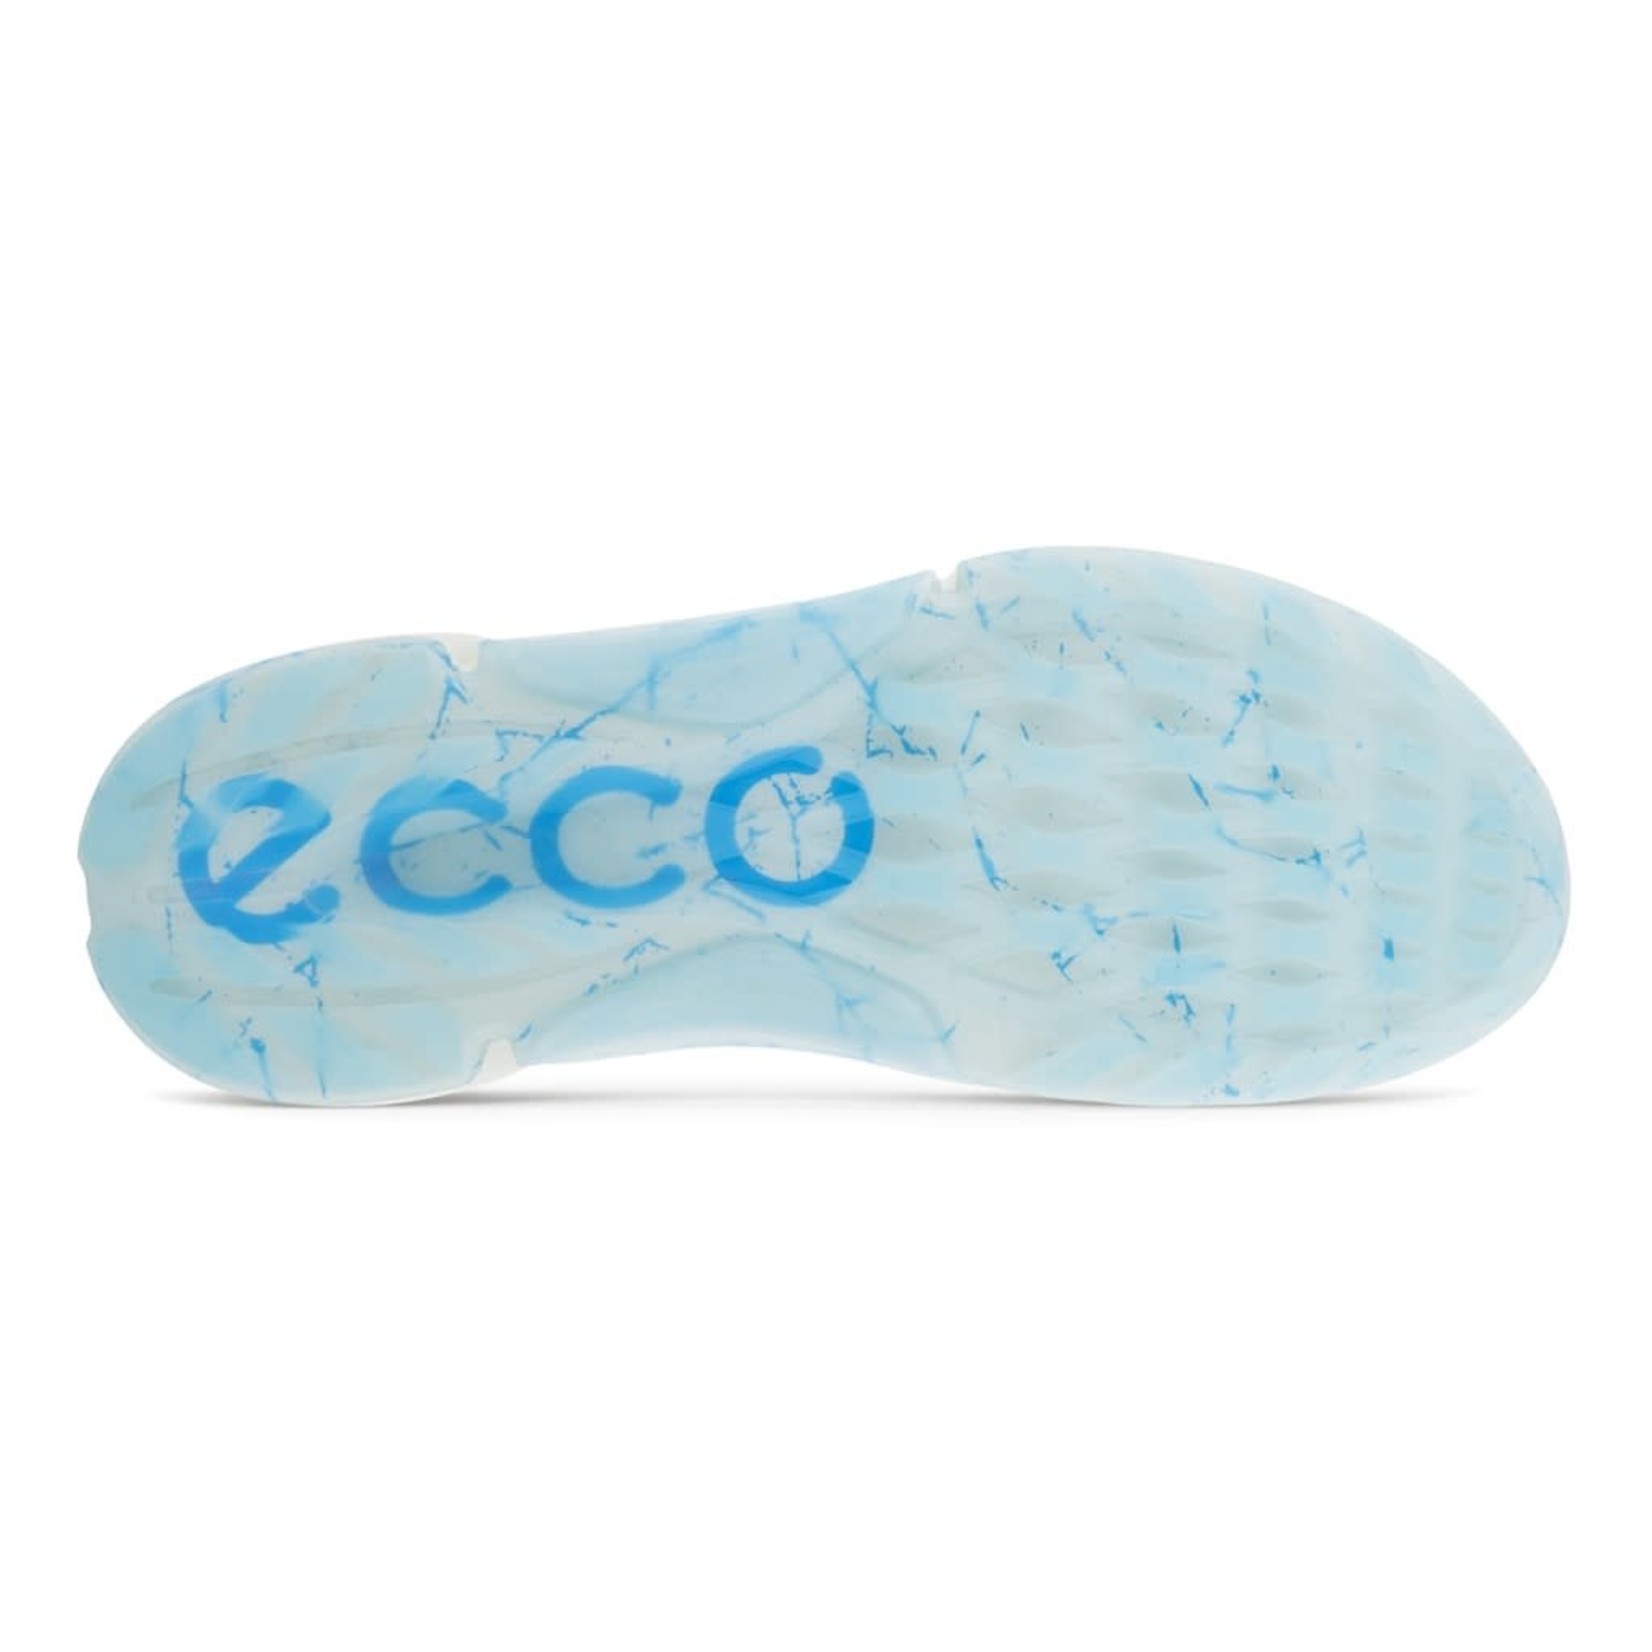 Ecco Ecco M Biom H4 White/Ice (Special Edition)